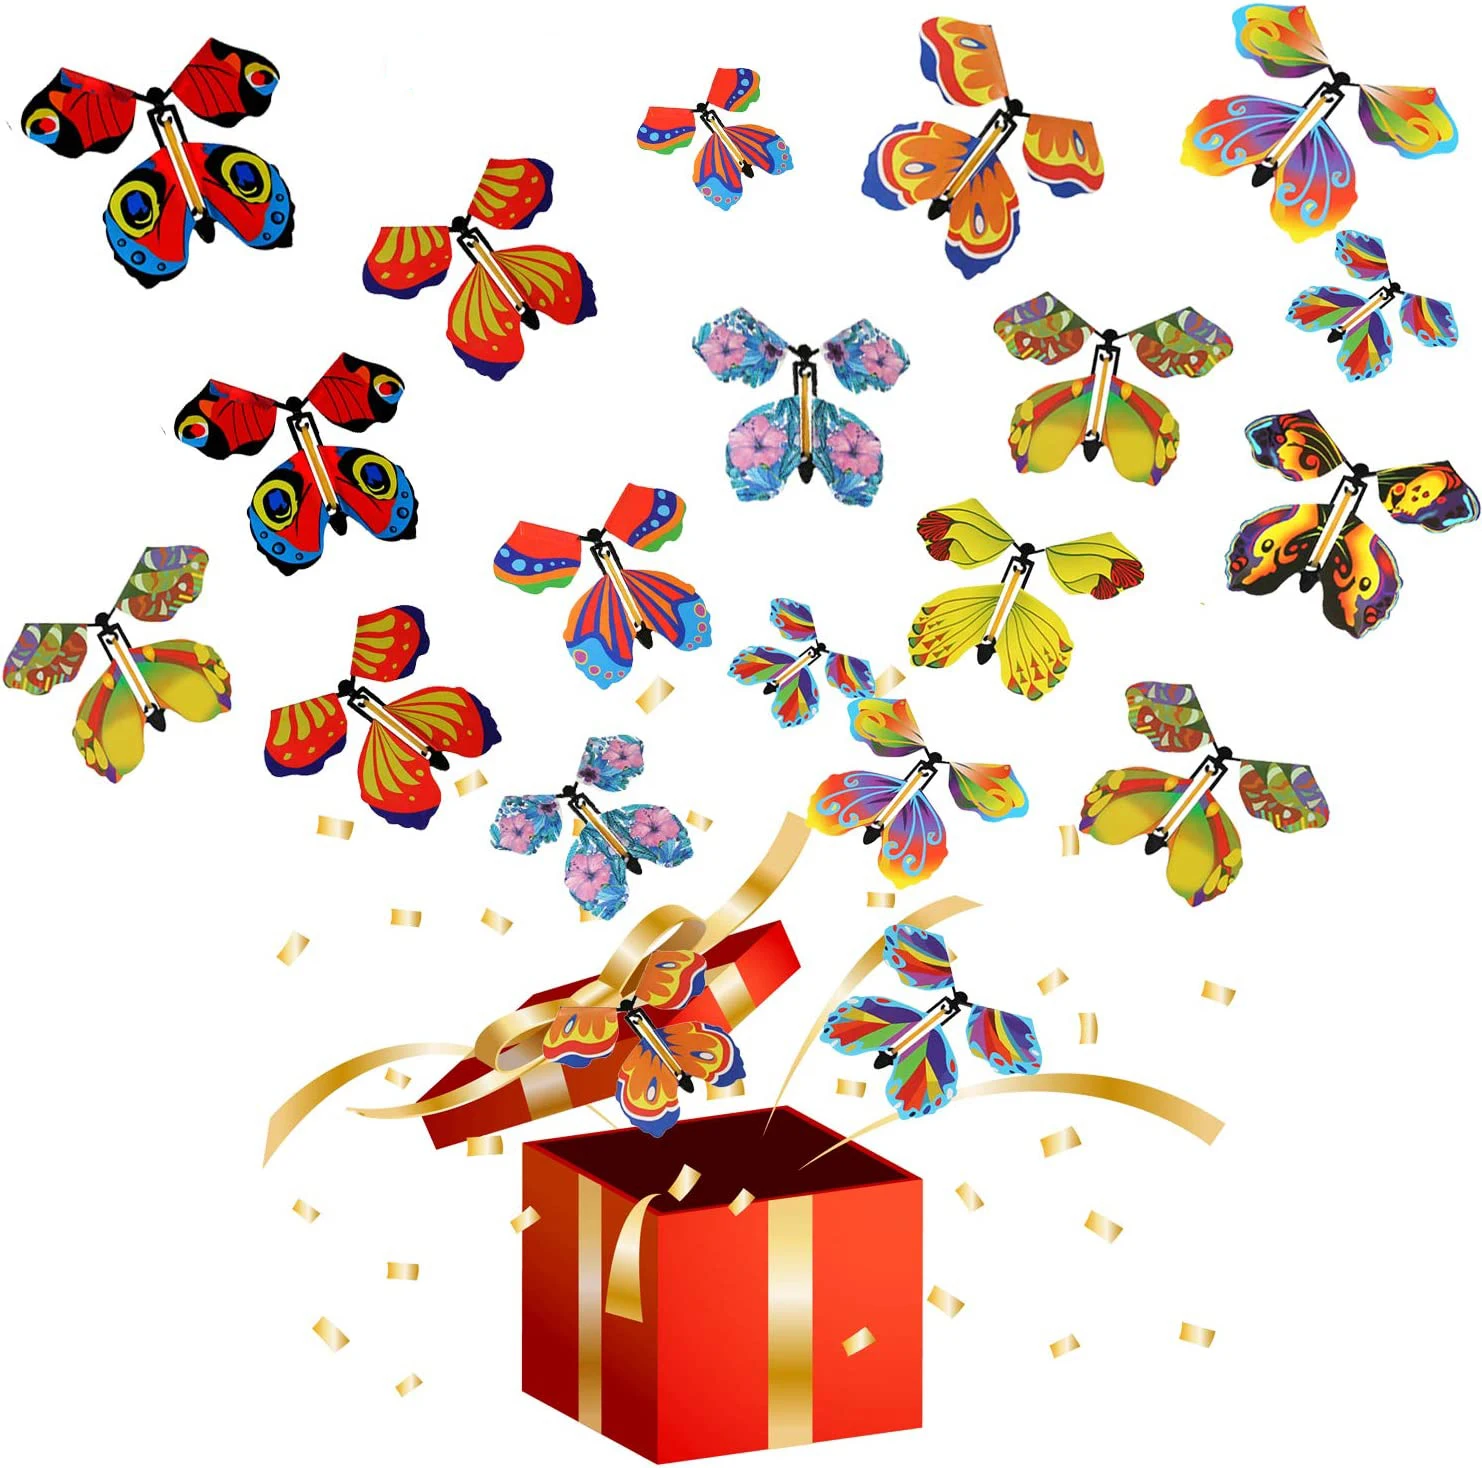 Magische fliegende Schmetterlings fee fliegende Spielzeug wicklung Gummiband elektrische Schmetterling Spielzeug Farbe Lesezeichen Geschenk Dekoration Geschenk